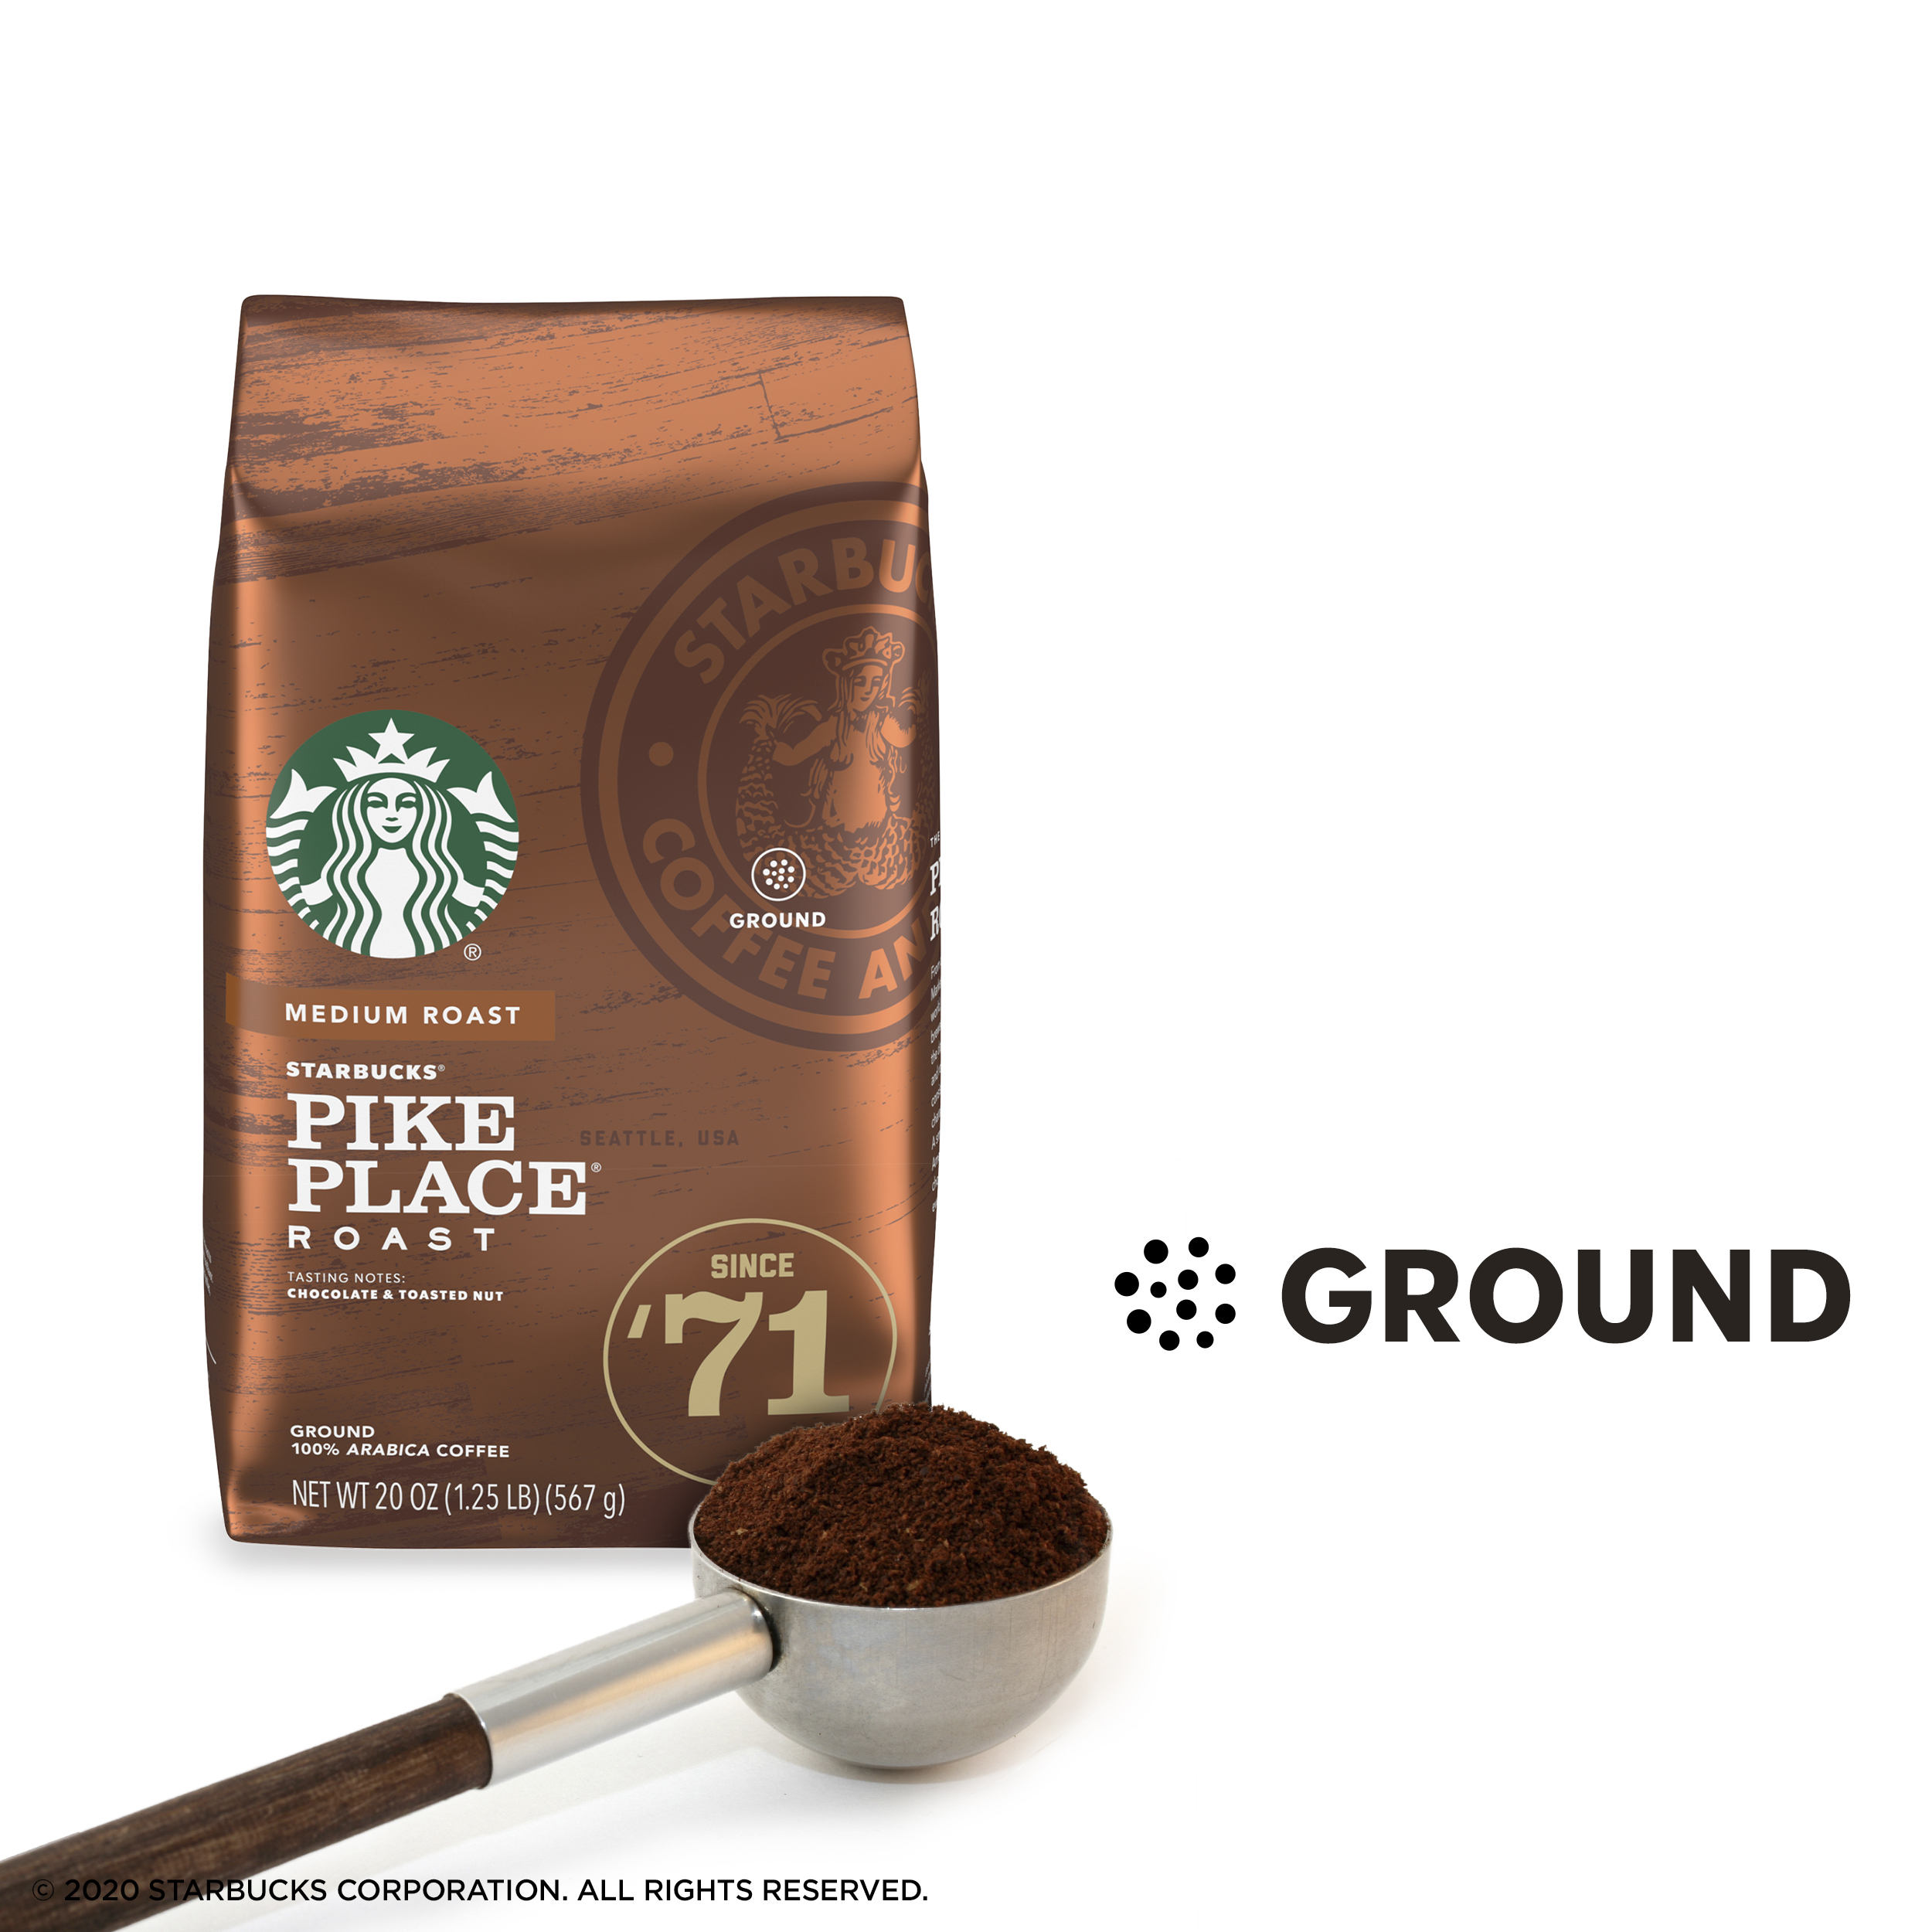 Starbucks Medium Roast Ground Coffee — Pike Place Roast — 100% Arabica — 1 bag (20 oz.) - image 3 of 6